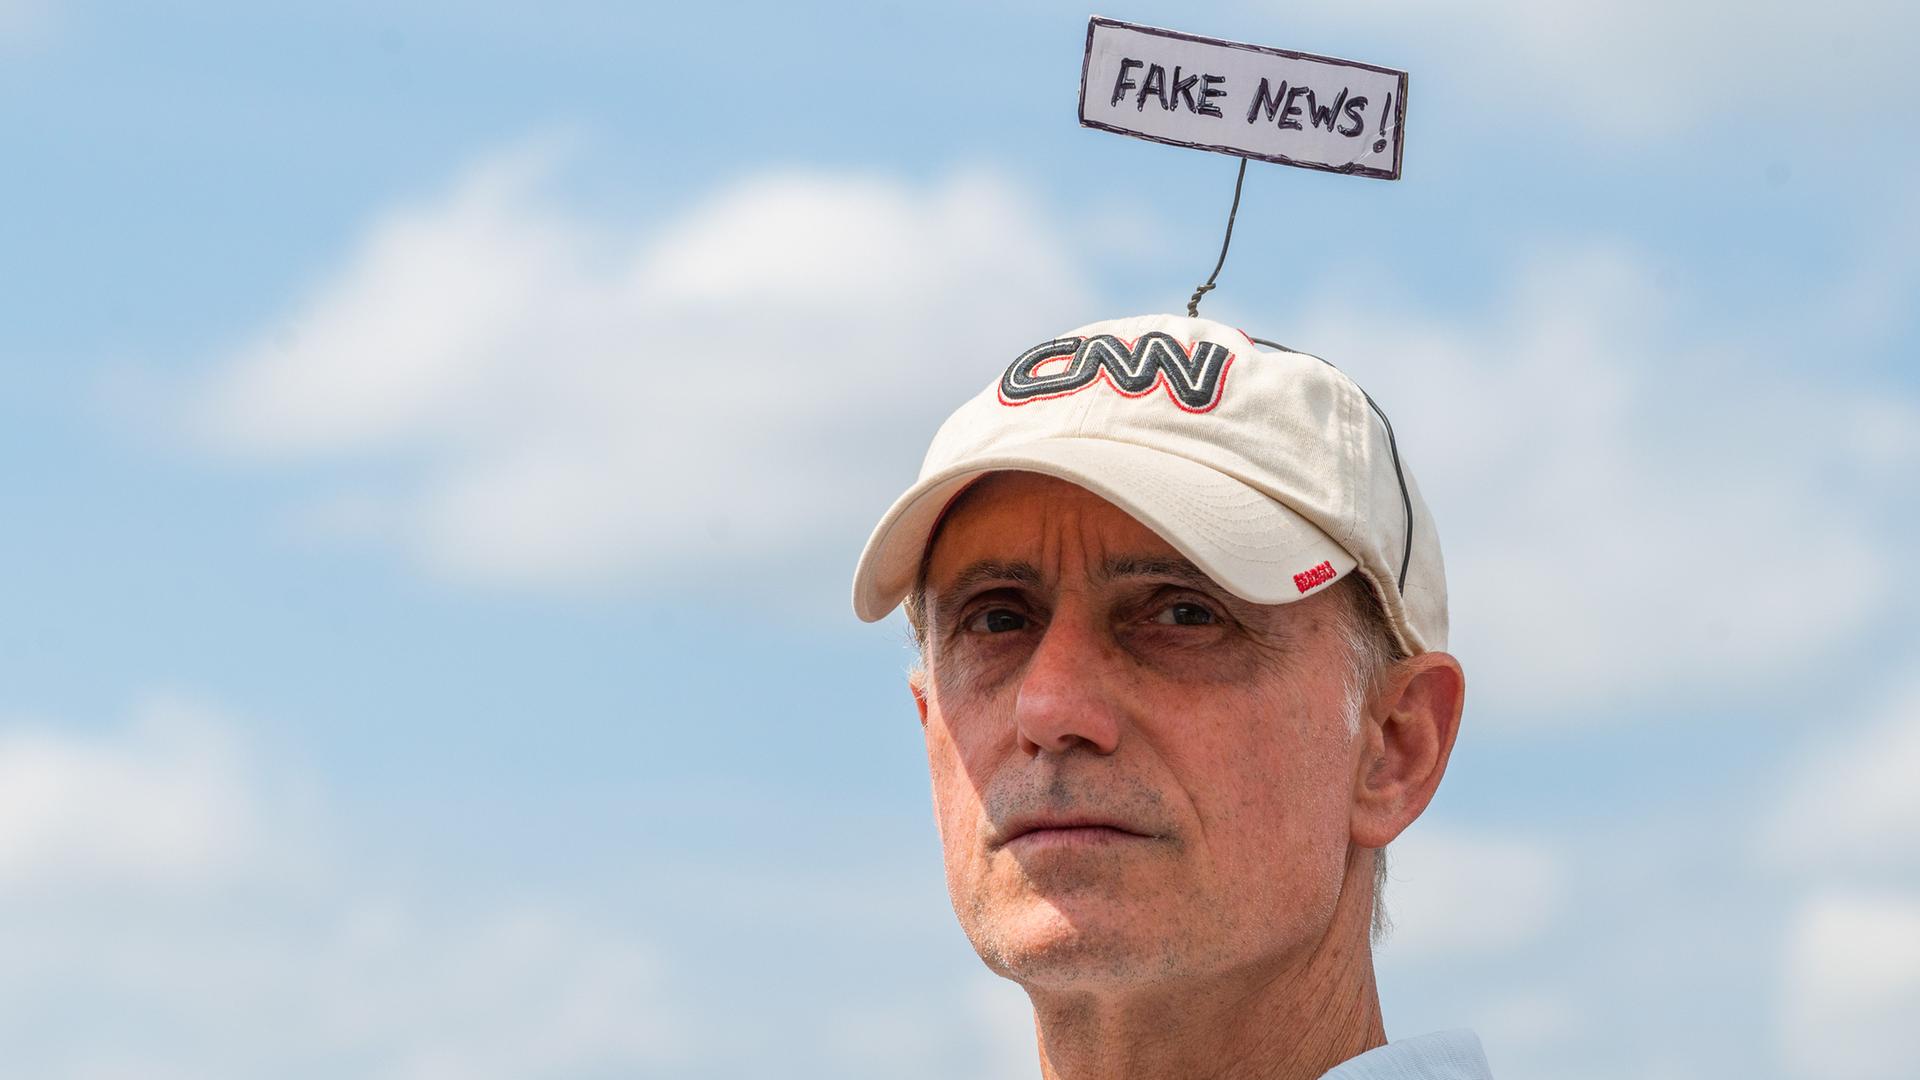 Ein Mann bei der Trump Rally im Wilkes-Barre Township in Pennsylvania mit CNN-Mütze, auf der er ein Schild mit der Aufschrift "Fake News!" befestigt hat, aufgenommen am 03.09.2022